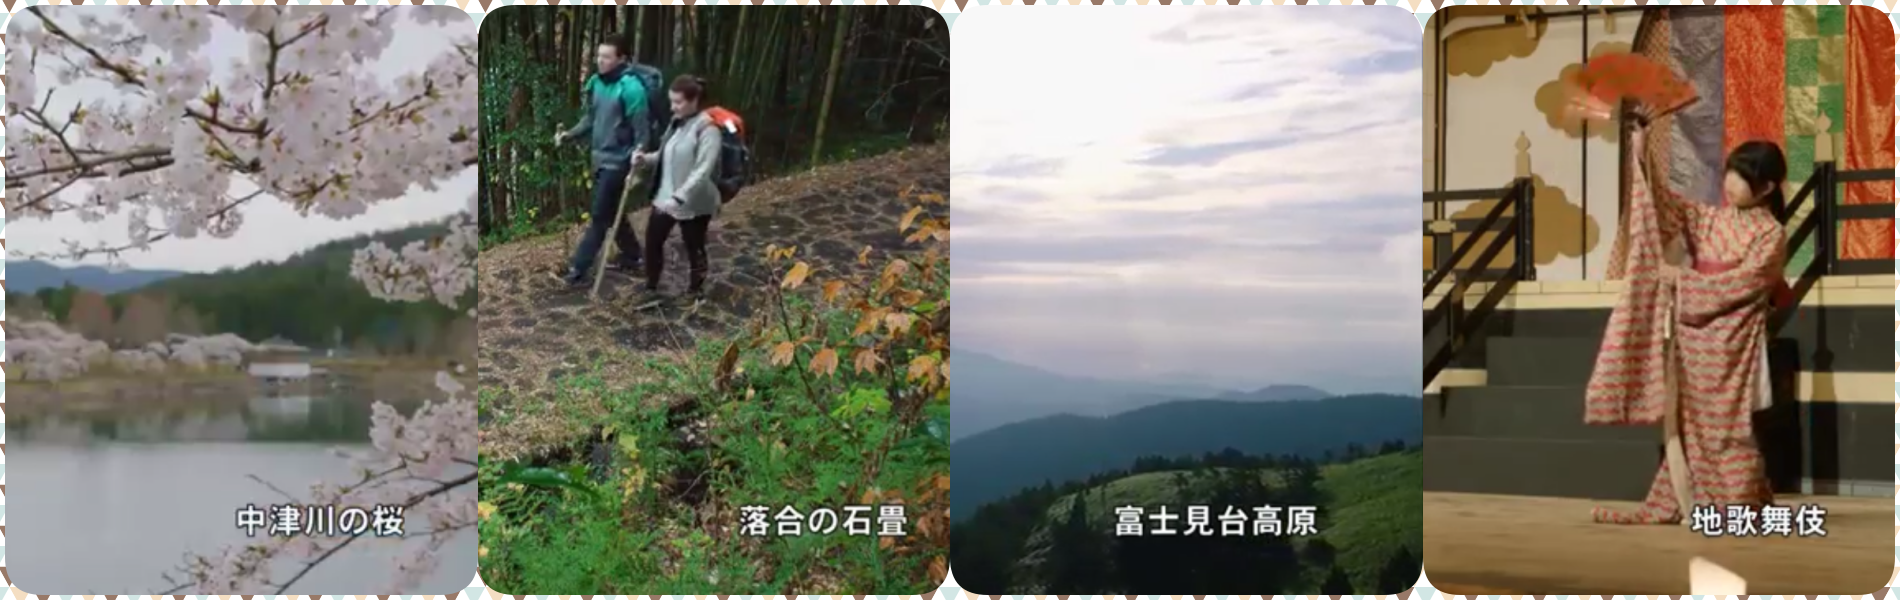 中津川のさくら、落合宿、富士見台高原、地歌舞伎の画像